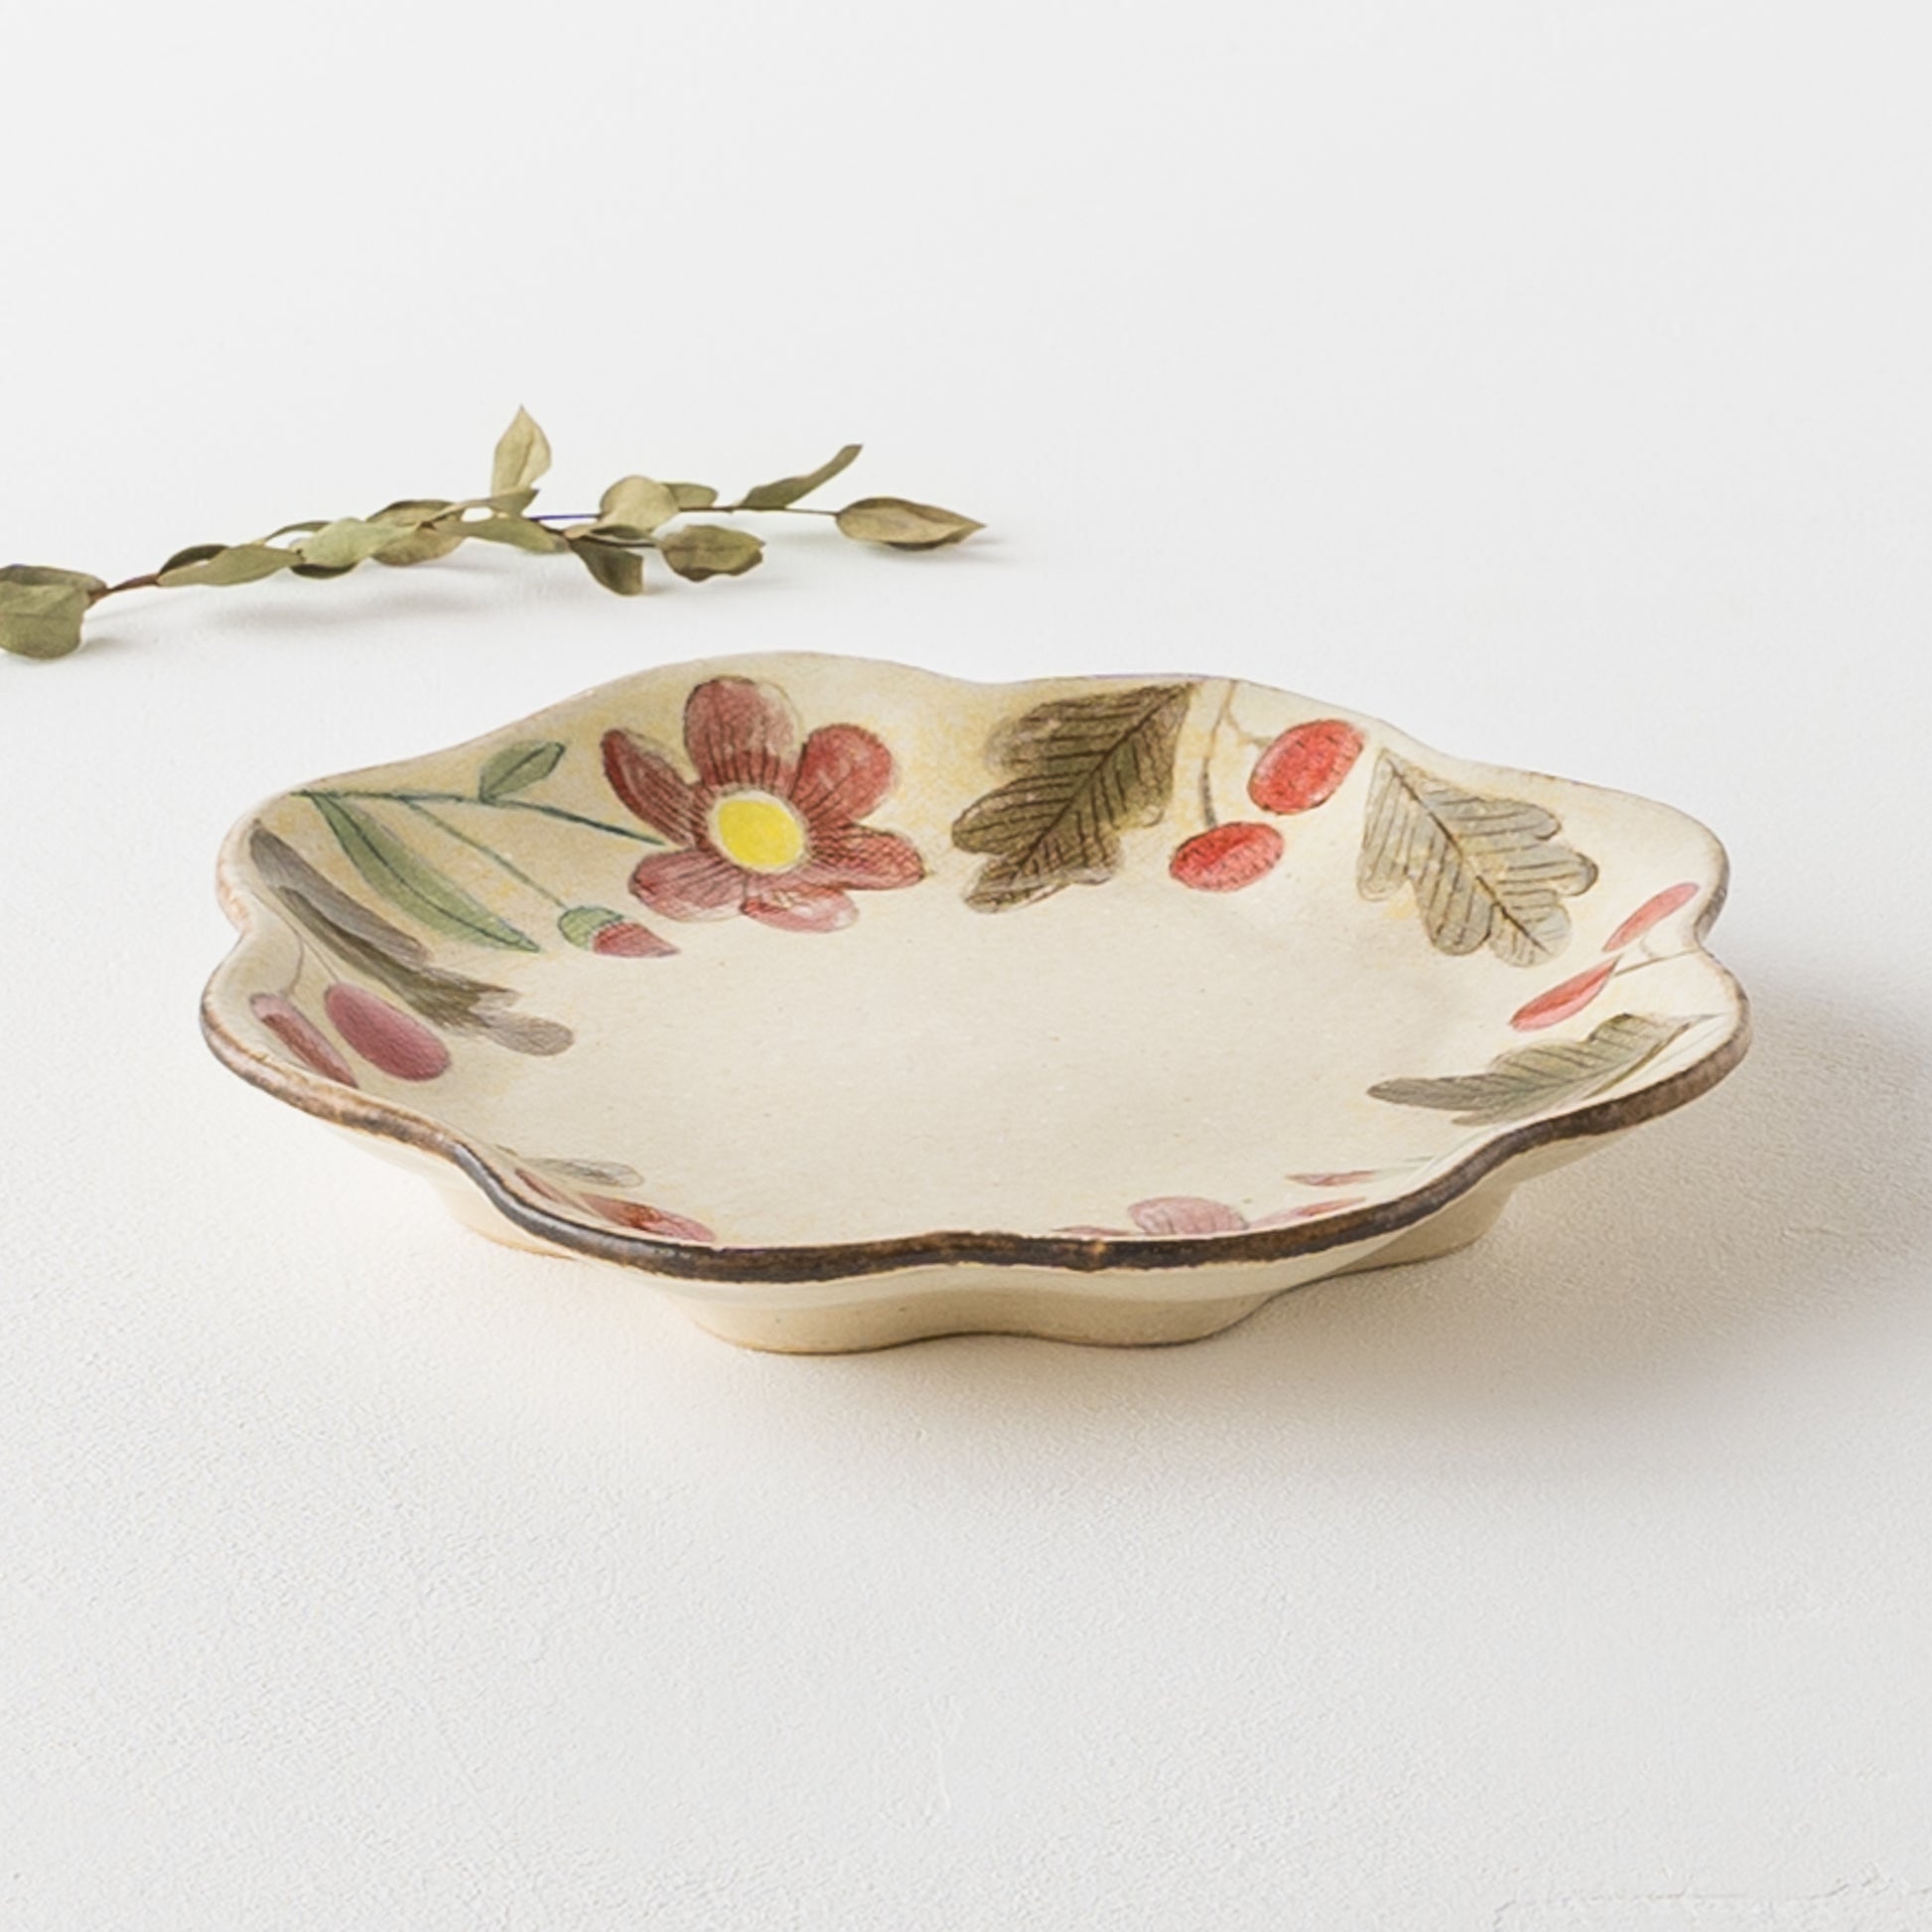 眺めているだけでほっこり癒される森野奈津子さんの花模様の花型皿